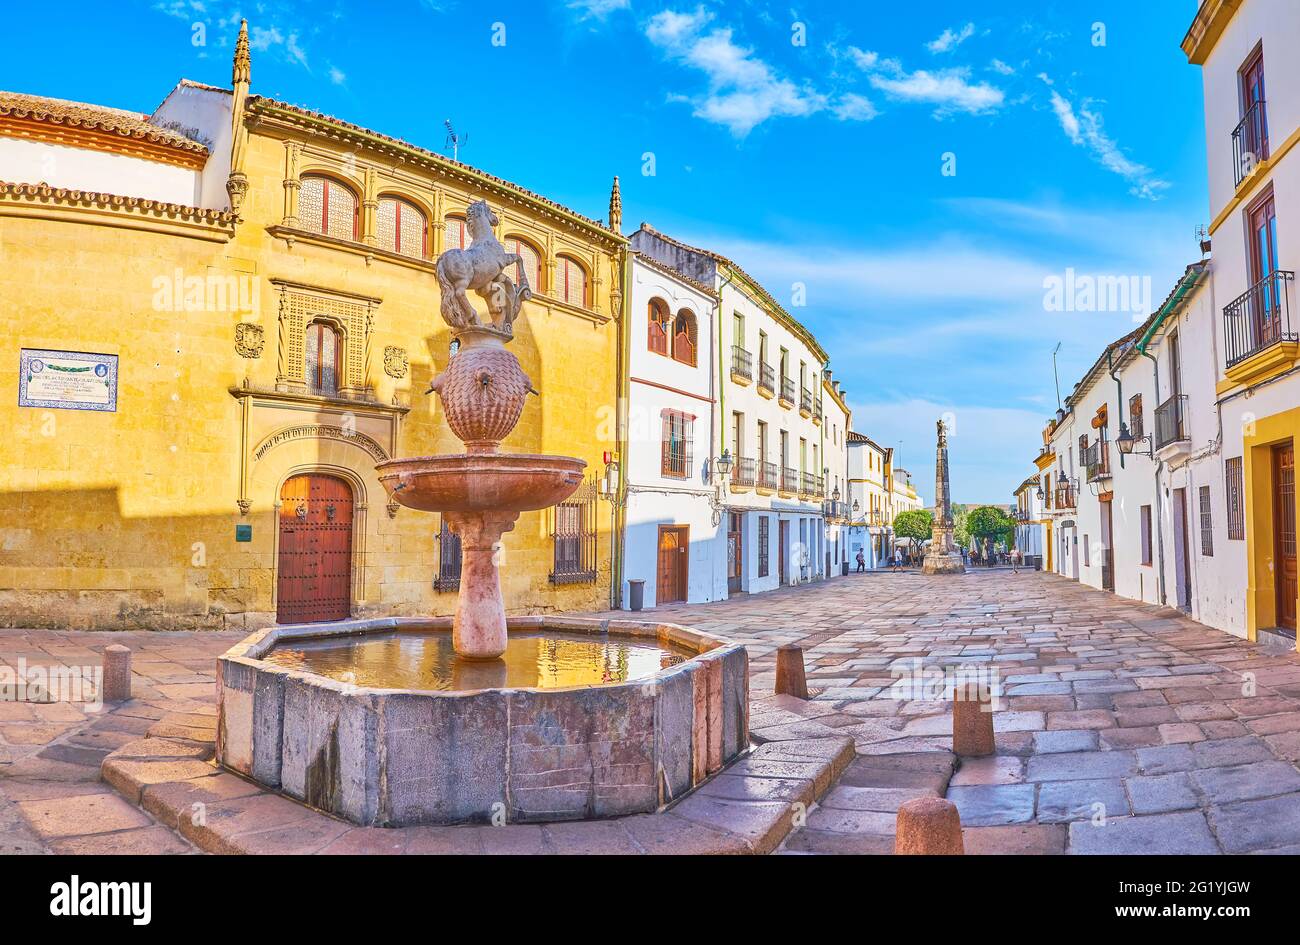 La medievale Piazza Potro con fontana Potro, decorata con scultura in pietra colt, imponente edificio di Hospital de la Caridad (Museo delle Belle Arti) A. Foto Stock